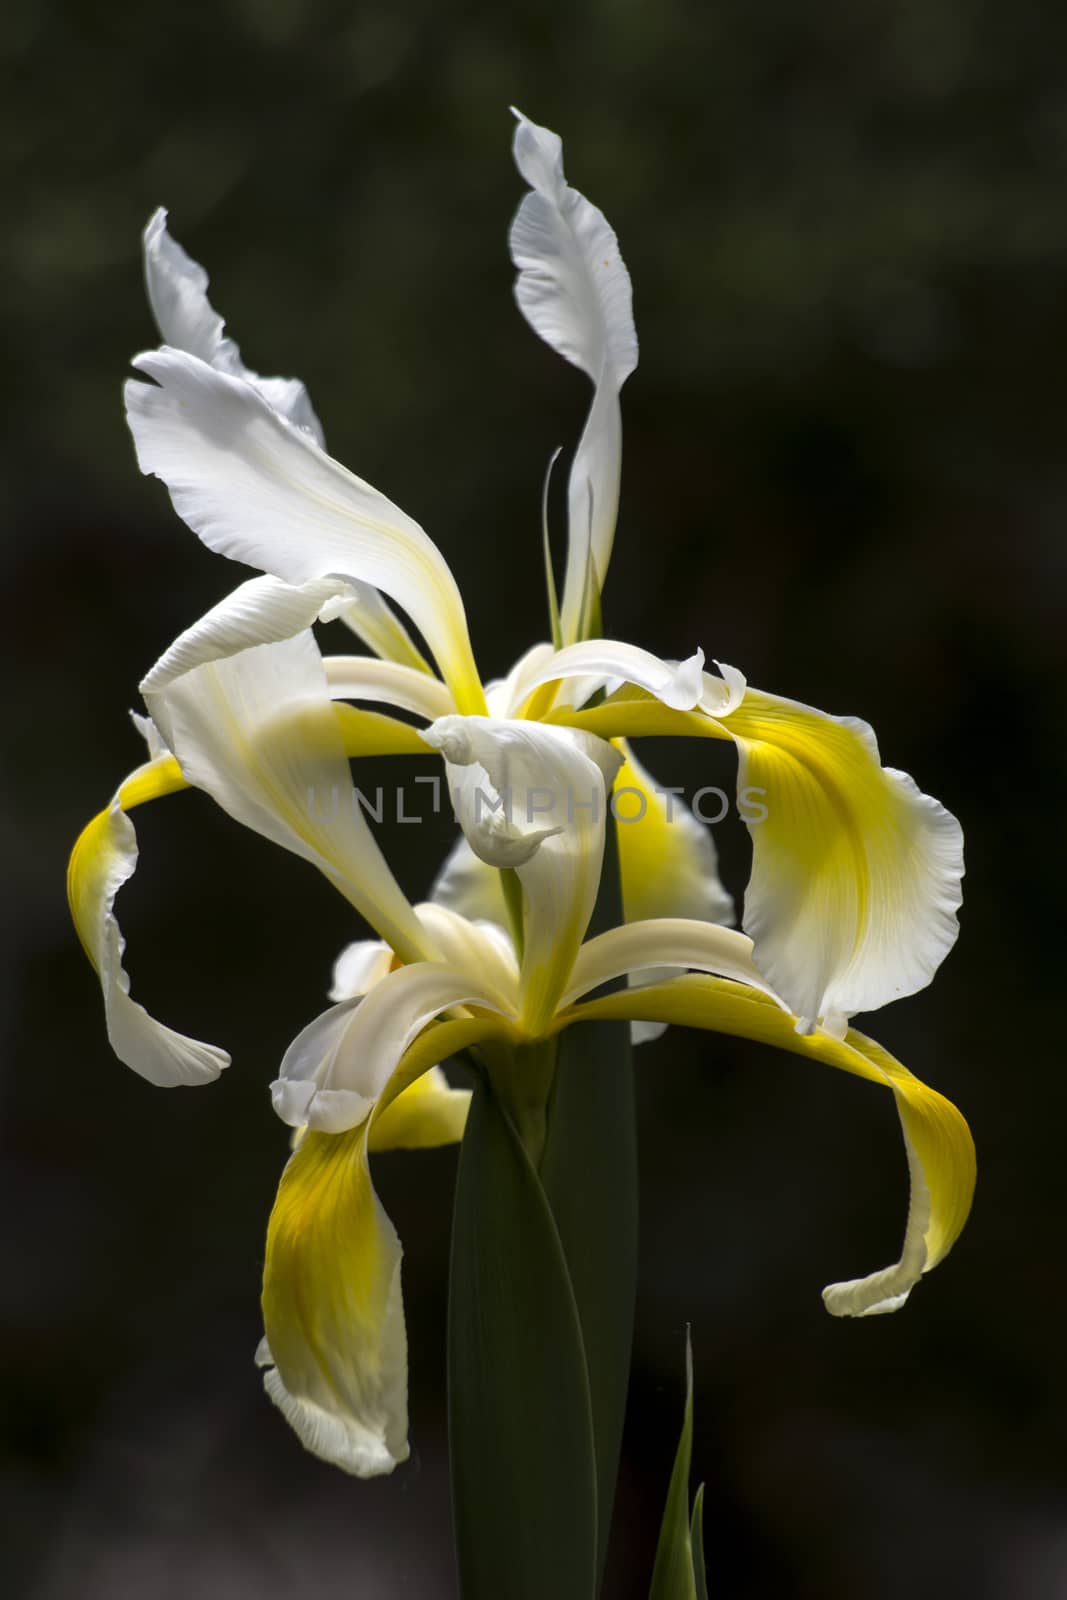 Veiled iris (Iris Spurio) by dadalia